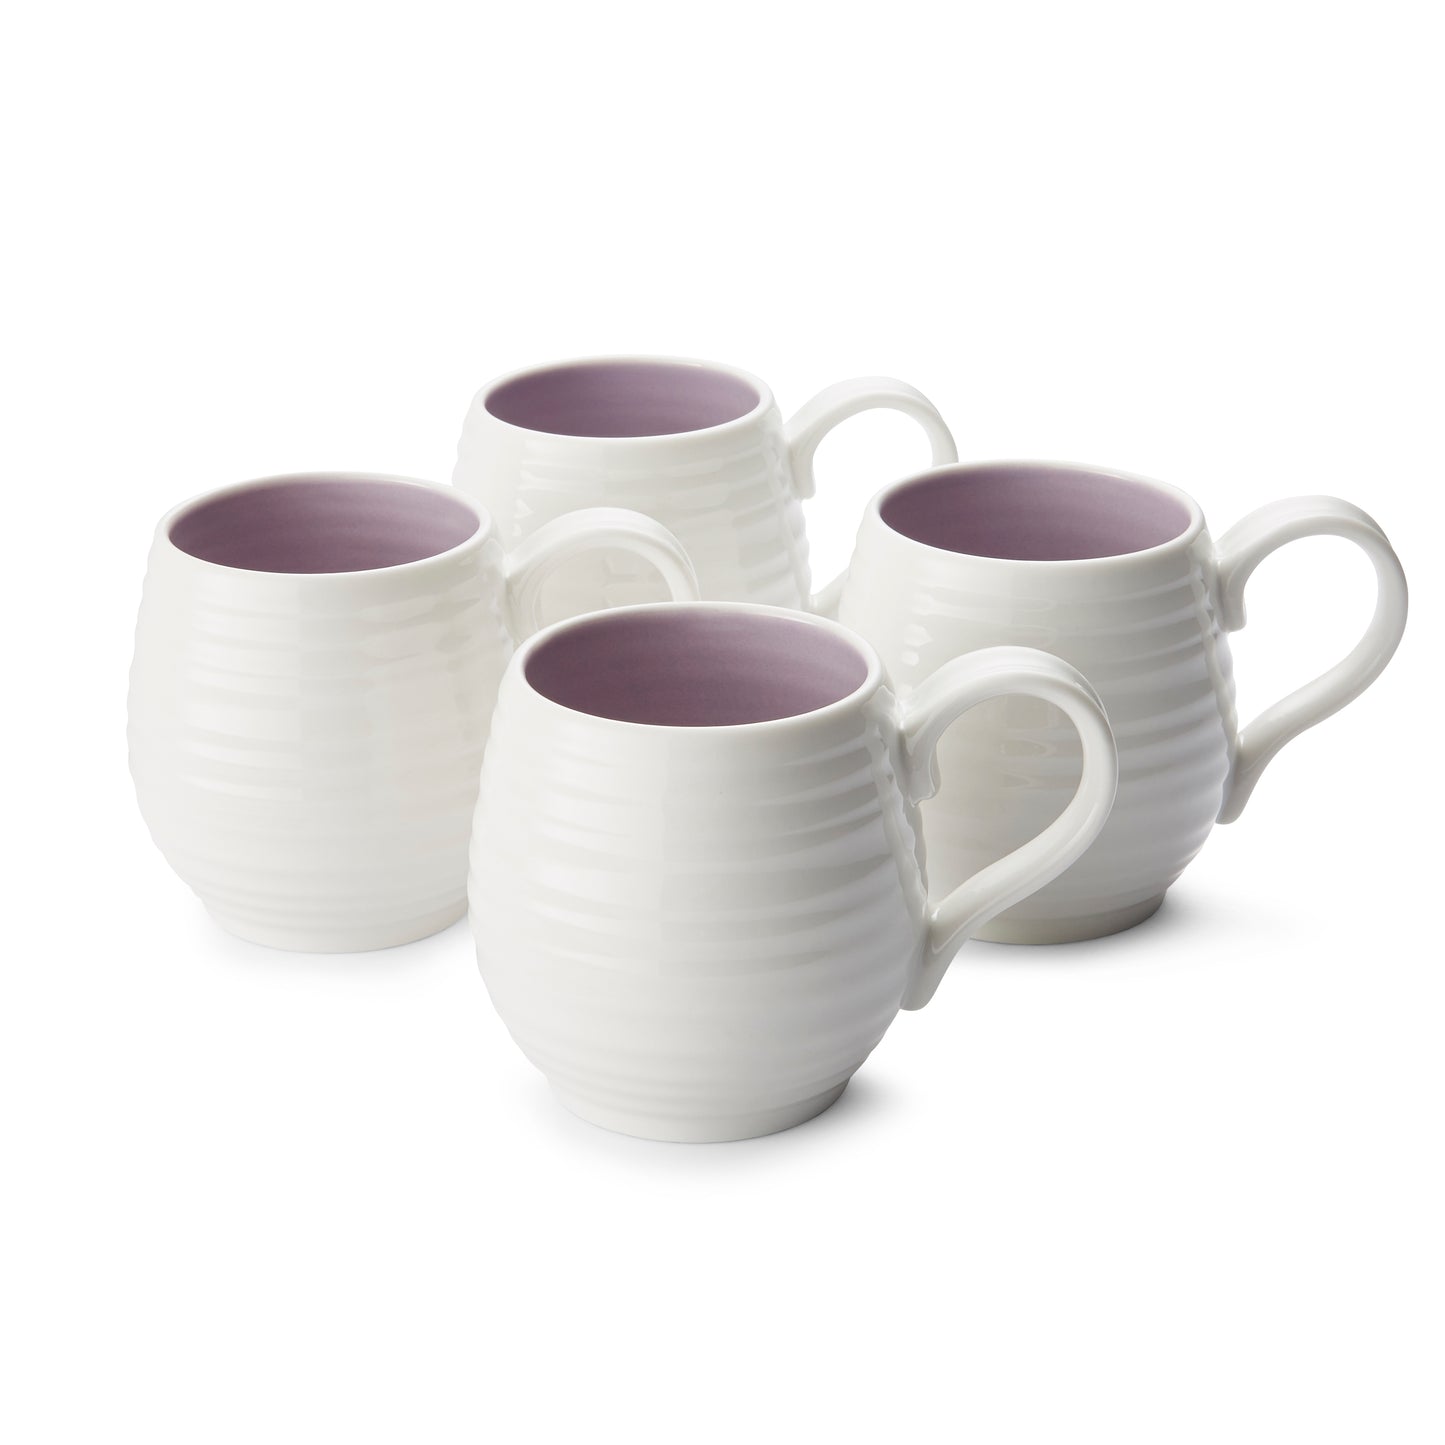 Sophie Conran For Portmeirion Honey Pot Mulberry 10oz Barrel Mug Set of 4